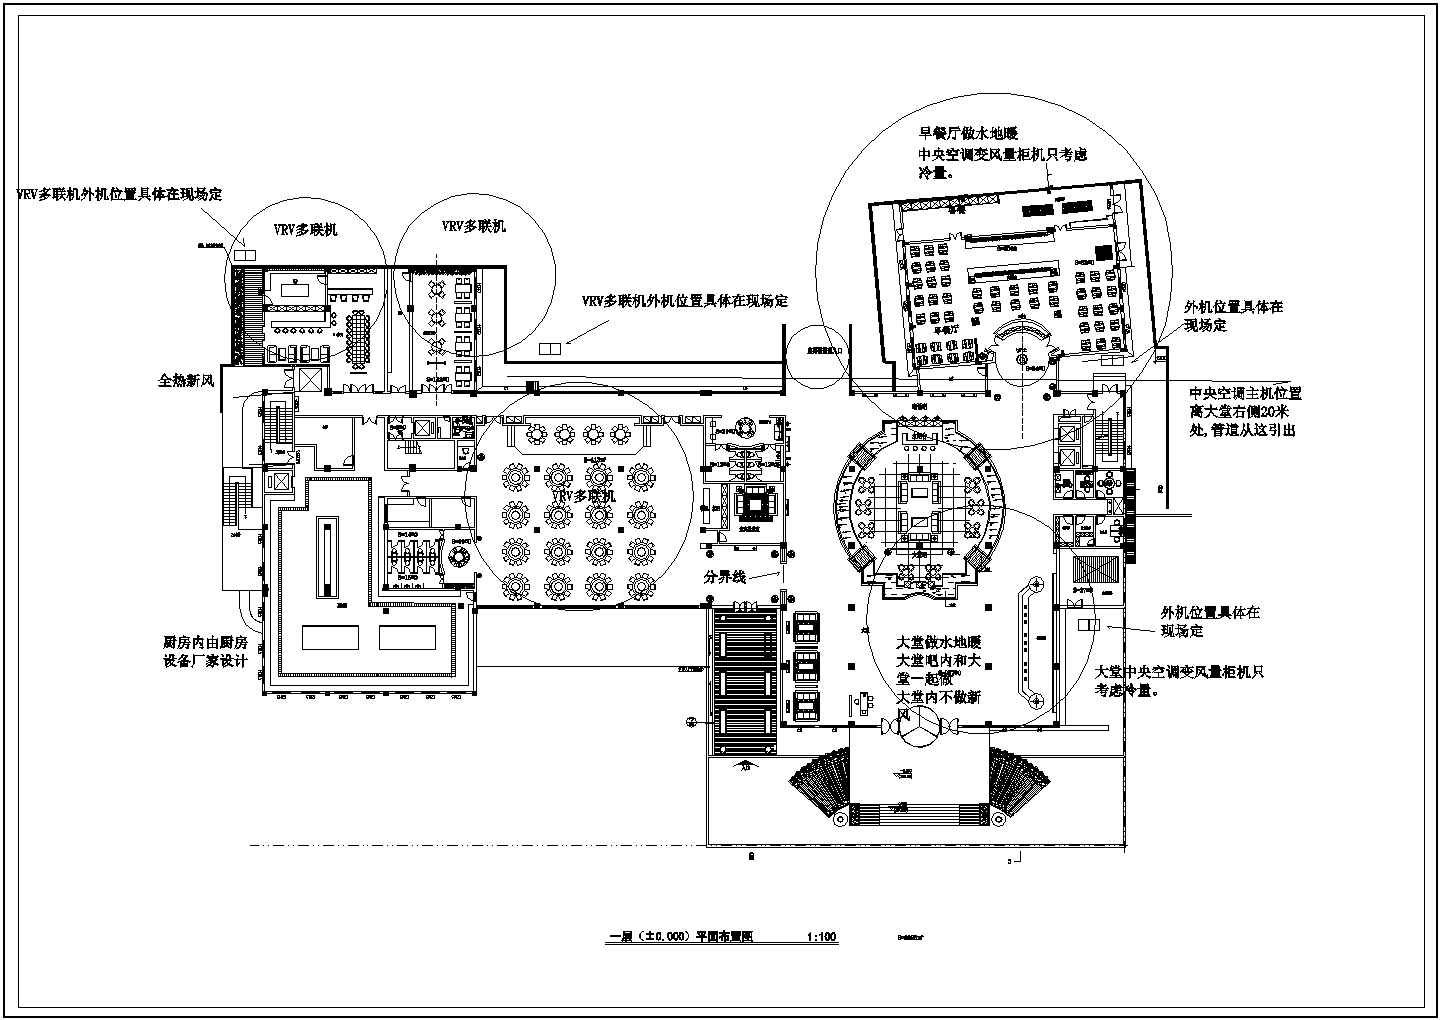 温泉酒店空调采暖系统设计施工图